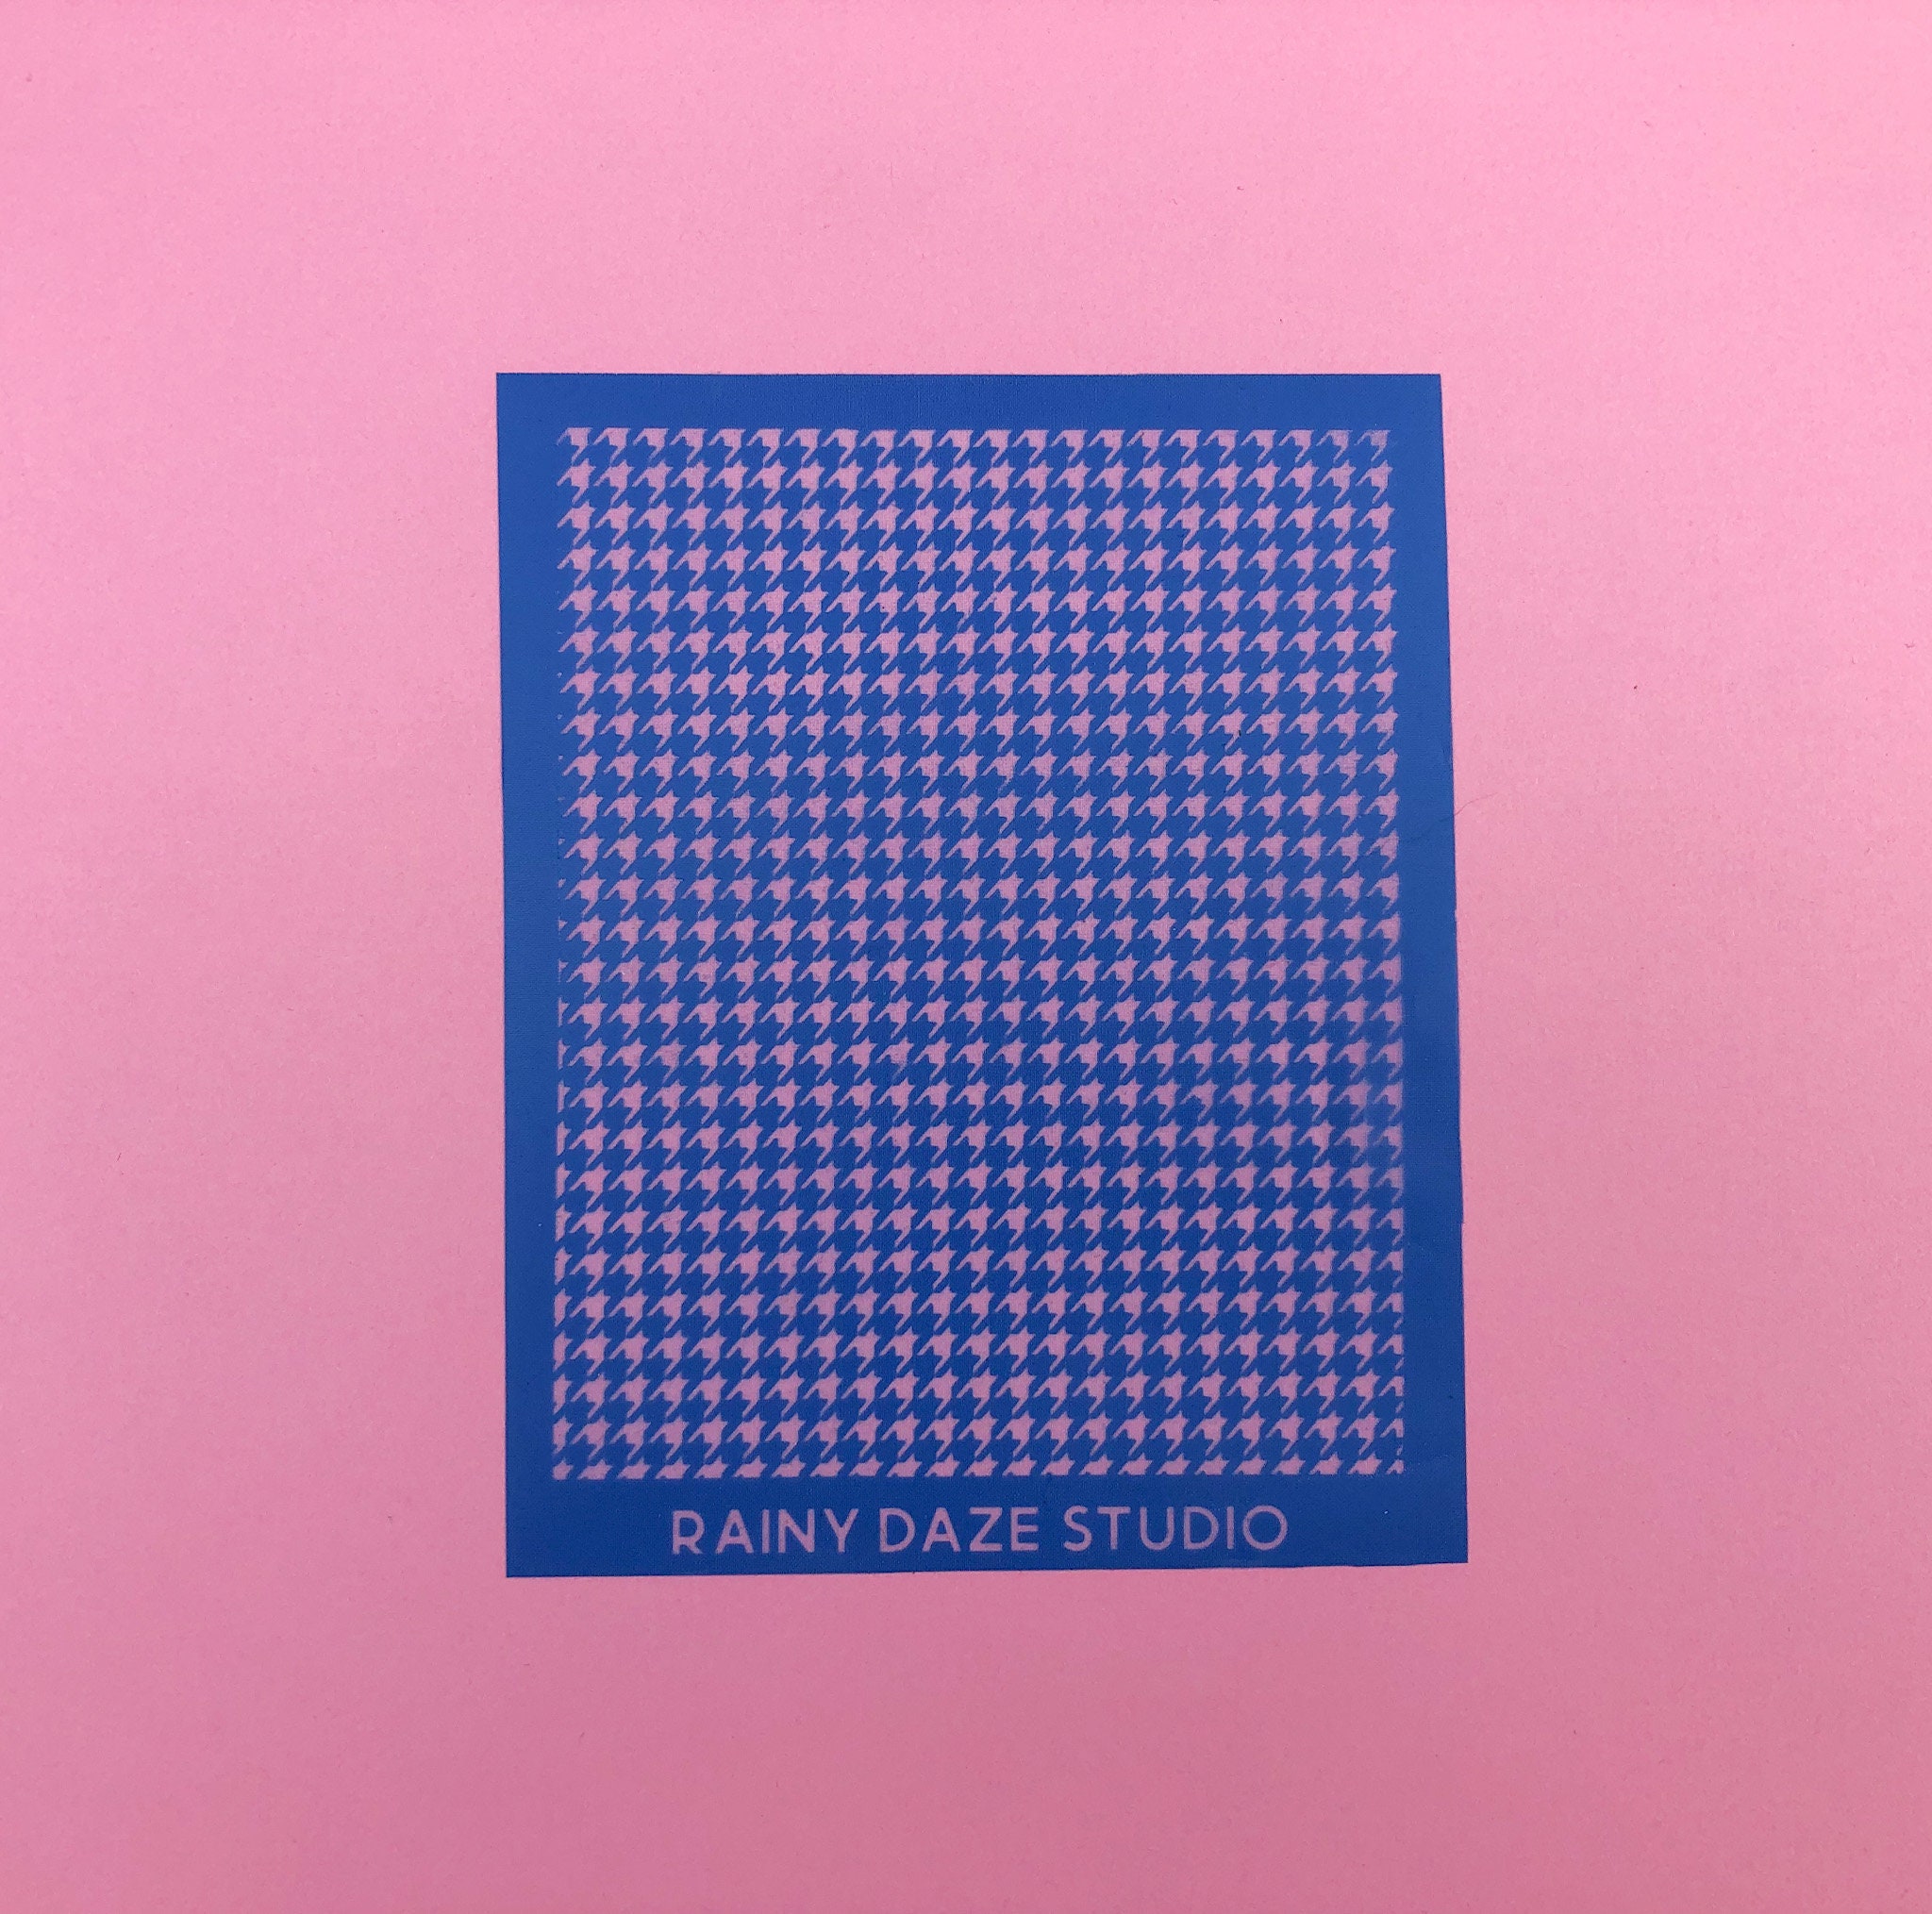 Polymer Clay Silk Screen Stencils Reusable Silkscreen Print Kit